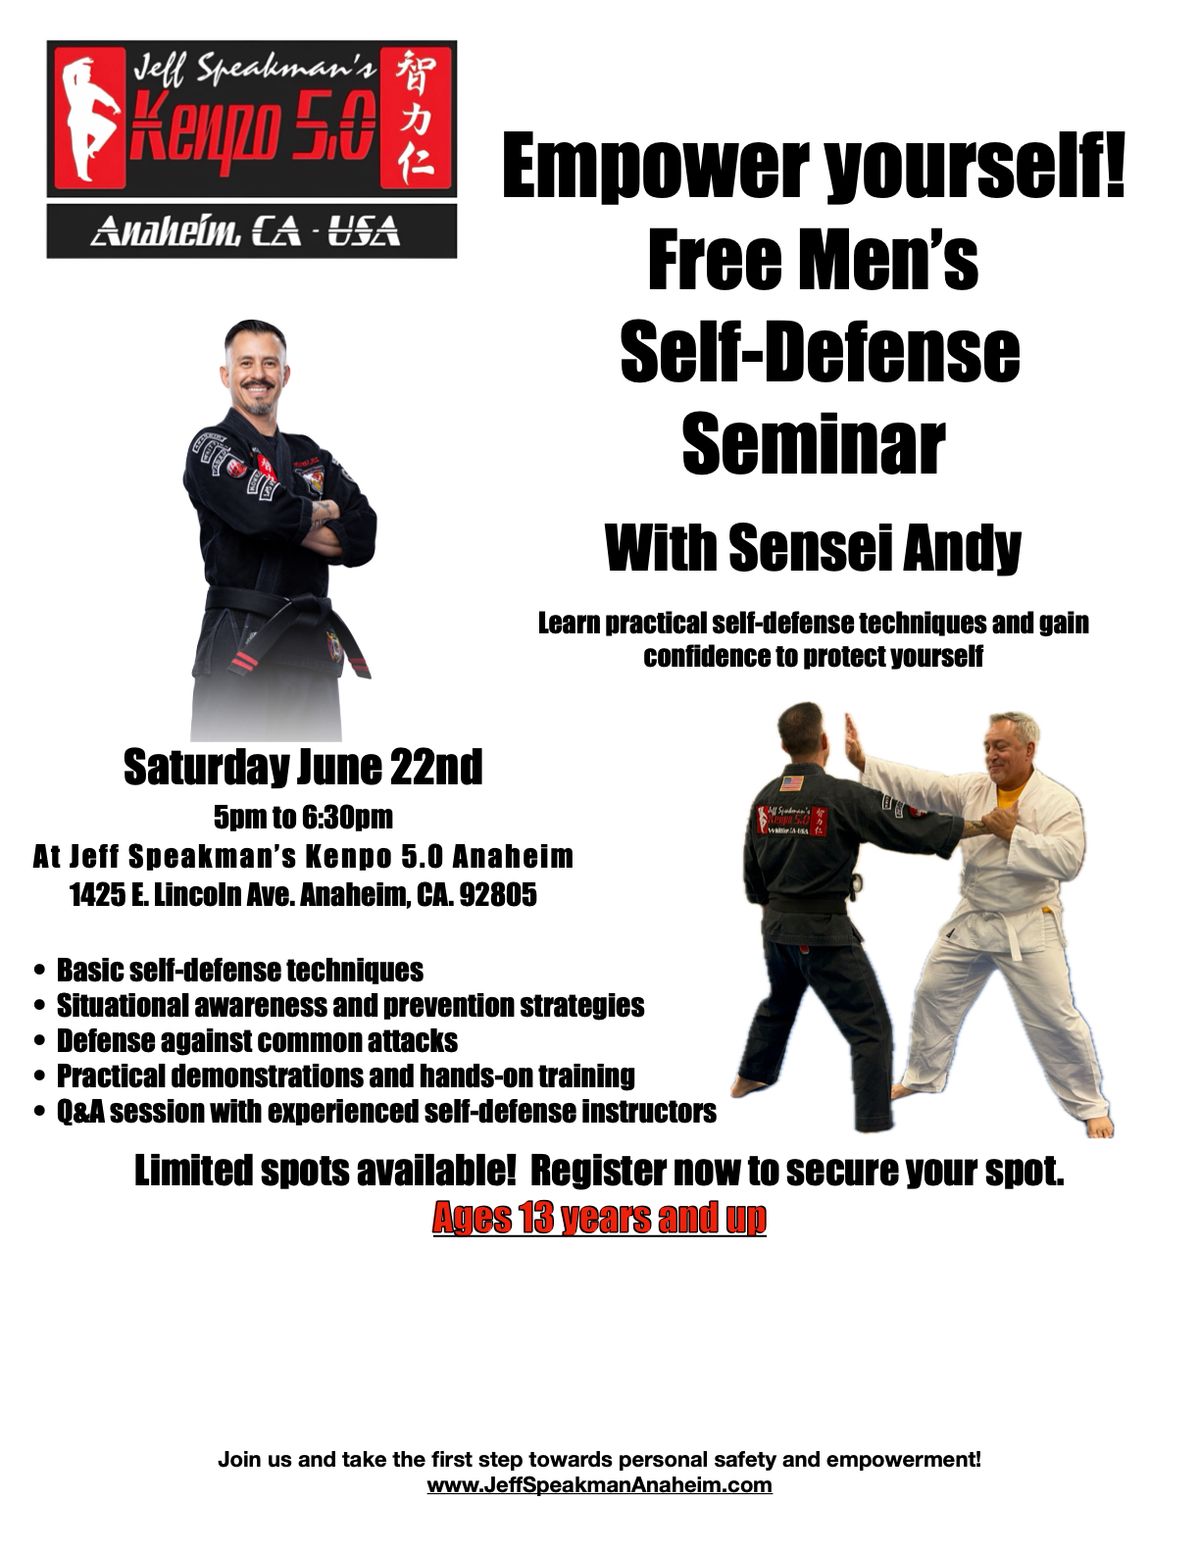 Free Men's Self-Defense Seminar